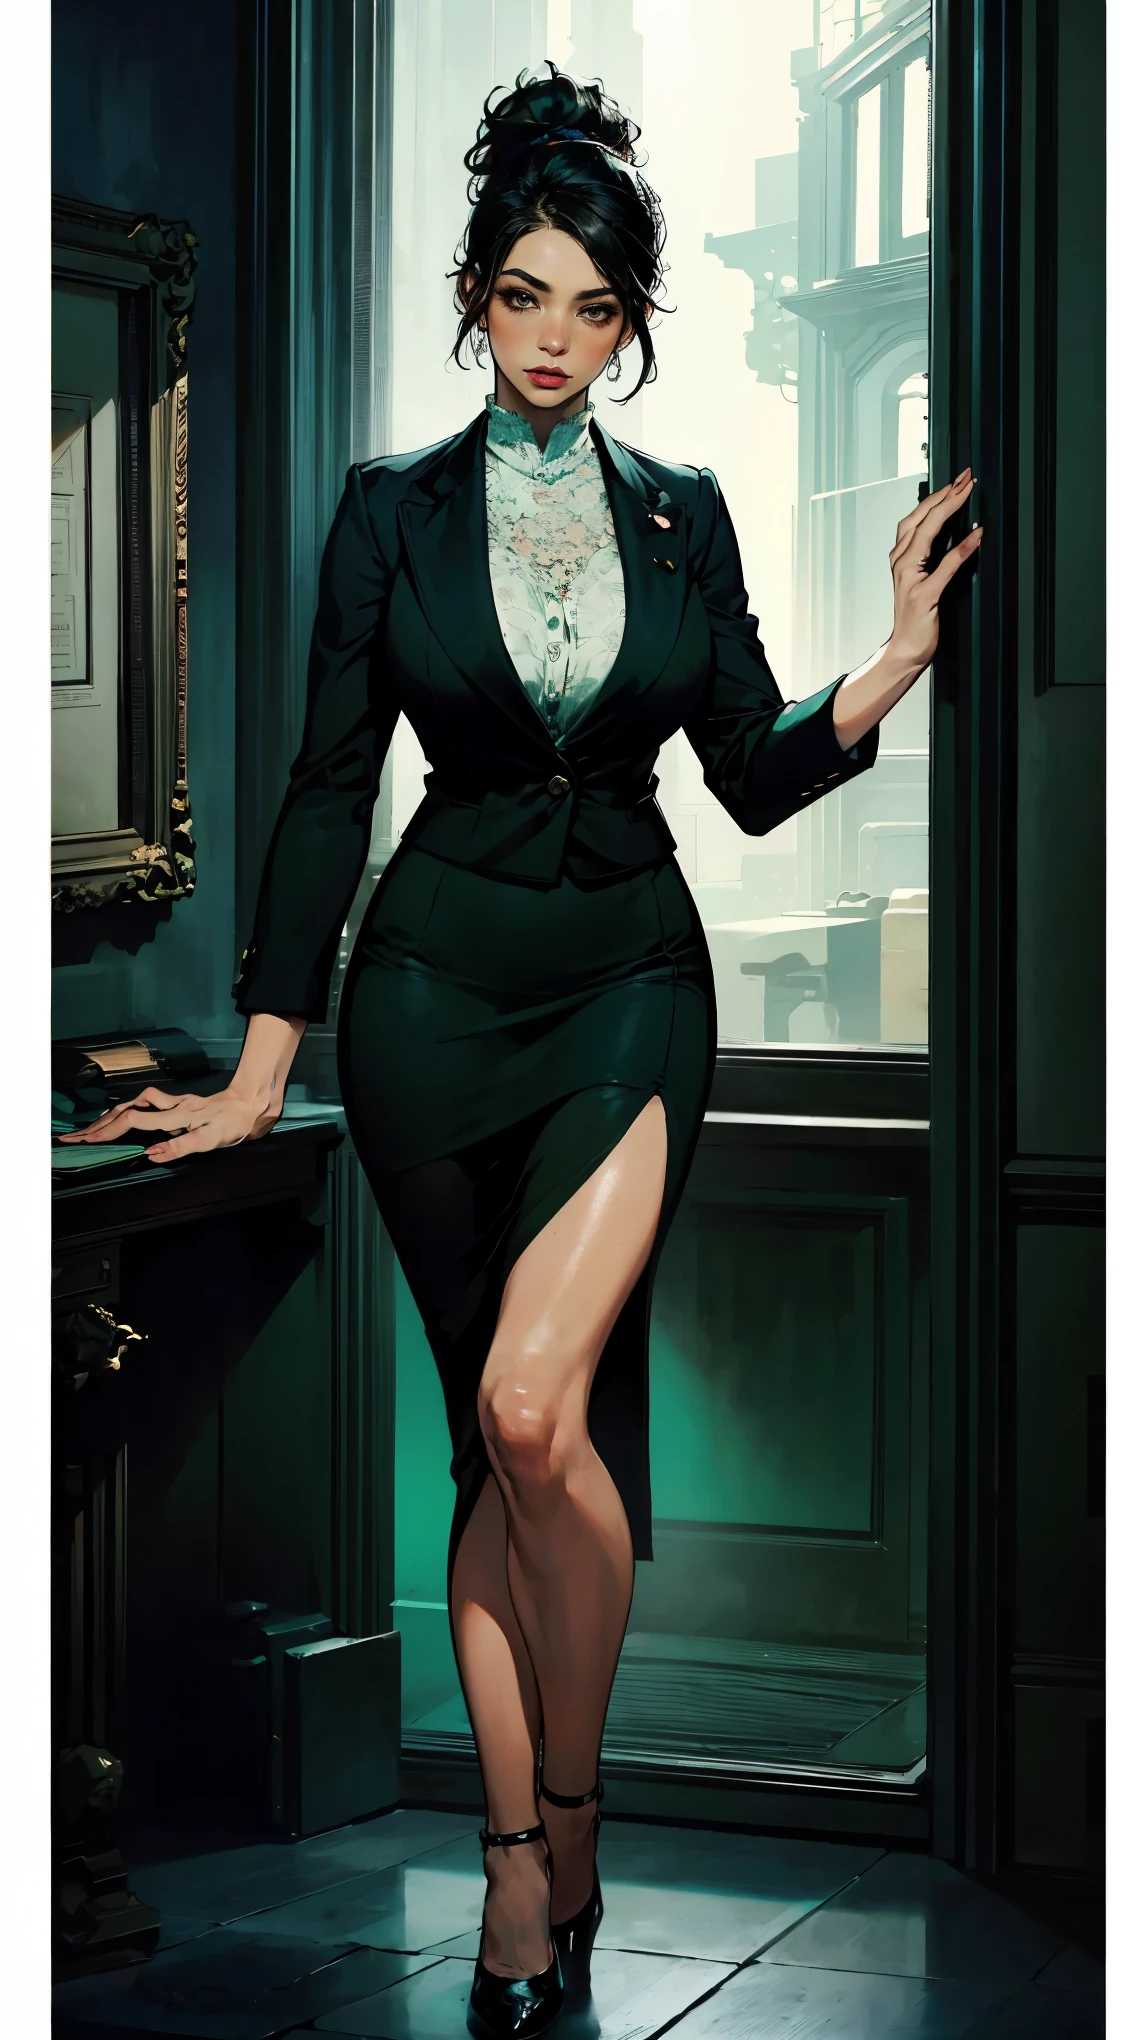 (最好的质量, 4K, 高分辨率, 杰作:1.2), 极其详细, 实际的 (photo-实际的:1.37), 34岁, 日本办公室女士, (身穿深绿色西装外套，内搭清爽的白色衬衫，搭配深绿色前开衩短铅笔裙), 黑色马尾辫, 黑色高跟鞋, 完美妆容, C 杯胸部, 健美苗条的身材, 平坦的腹部, 沙漏型身材, 欢迎顾客的姿势, 银行背景. 高度重视细节, 现代环境, 震撼的视觉冲击, 自信地保持镇定, 专业气质, 可靠性的象征, 高端生活方式, 非凡魅力.
